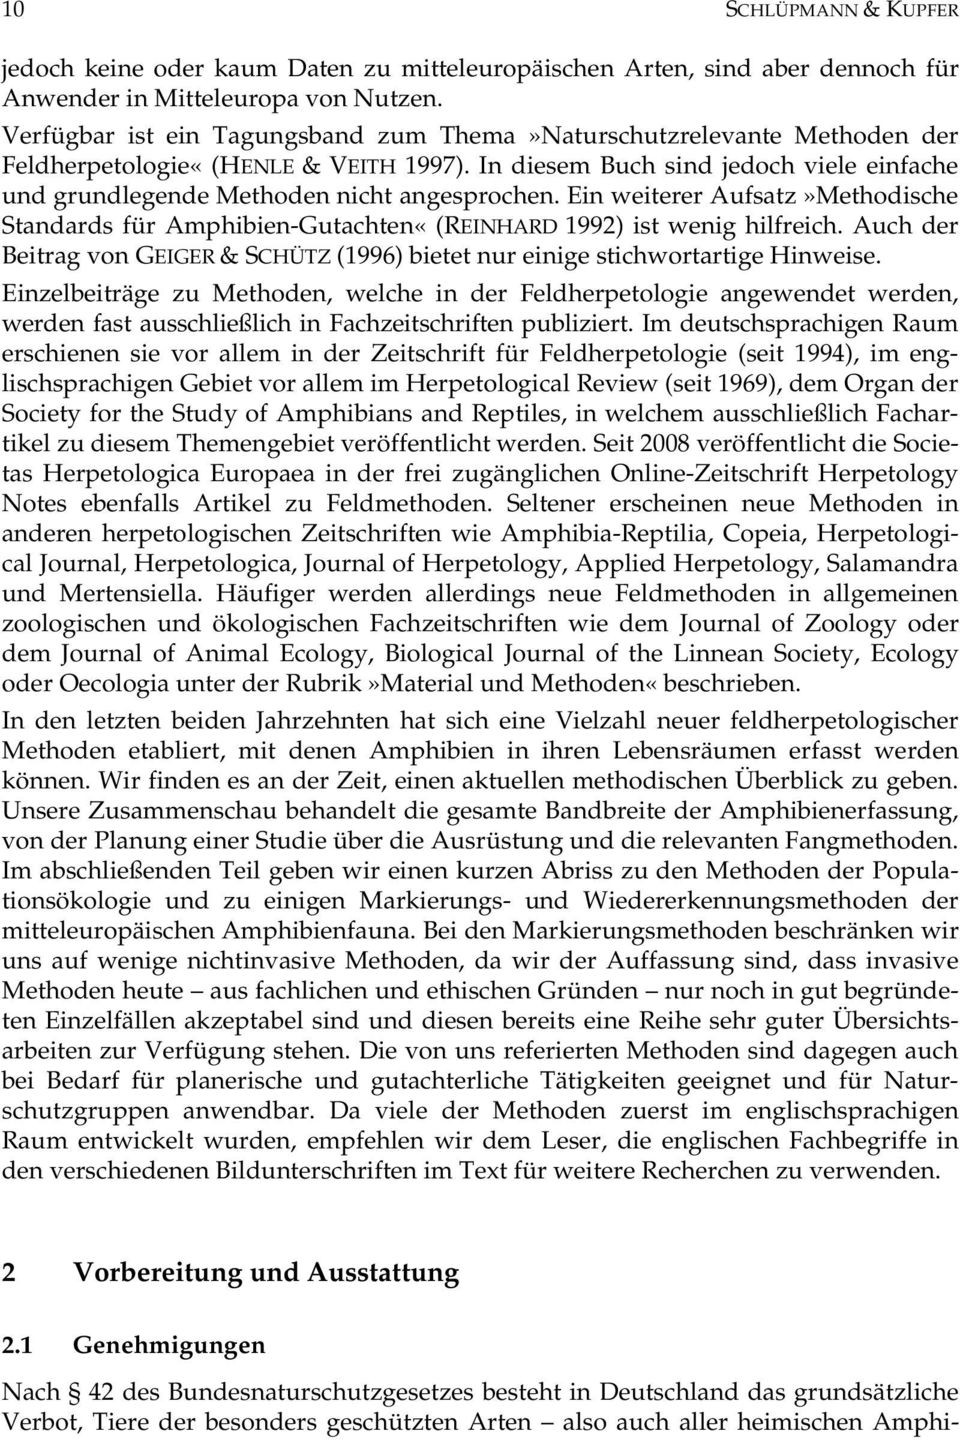 Ein weiterer Aufsatz»Methodische Standards für Amphibien-Gutachten«(REINHARD 1992) ist wenig hilfreich. Auch der Beitrag von GEIGER & SCHÜTZ (1996) bietet nur einige stichwortartige Hinweise.